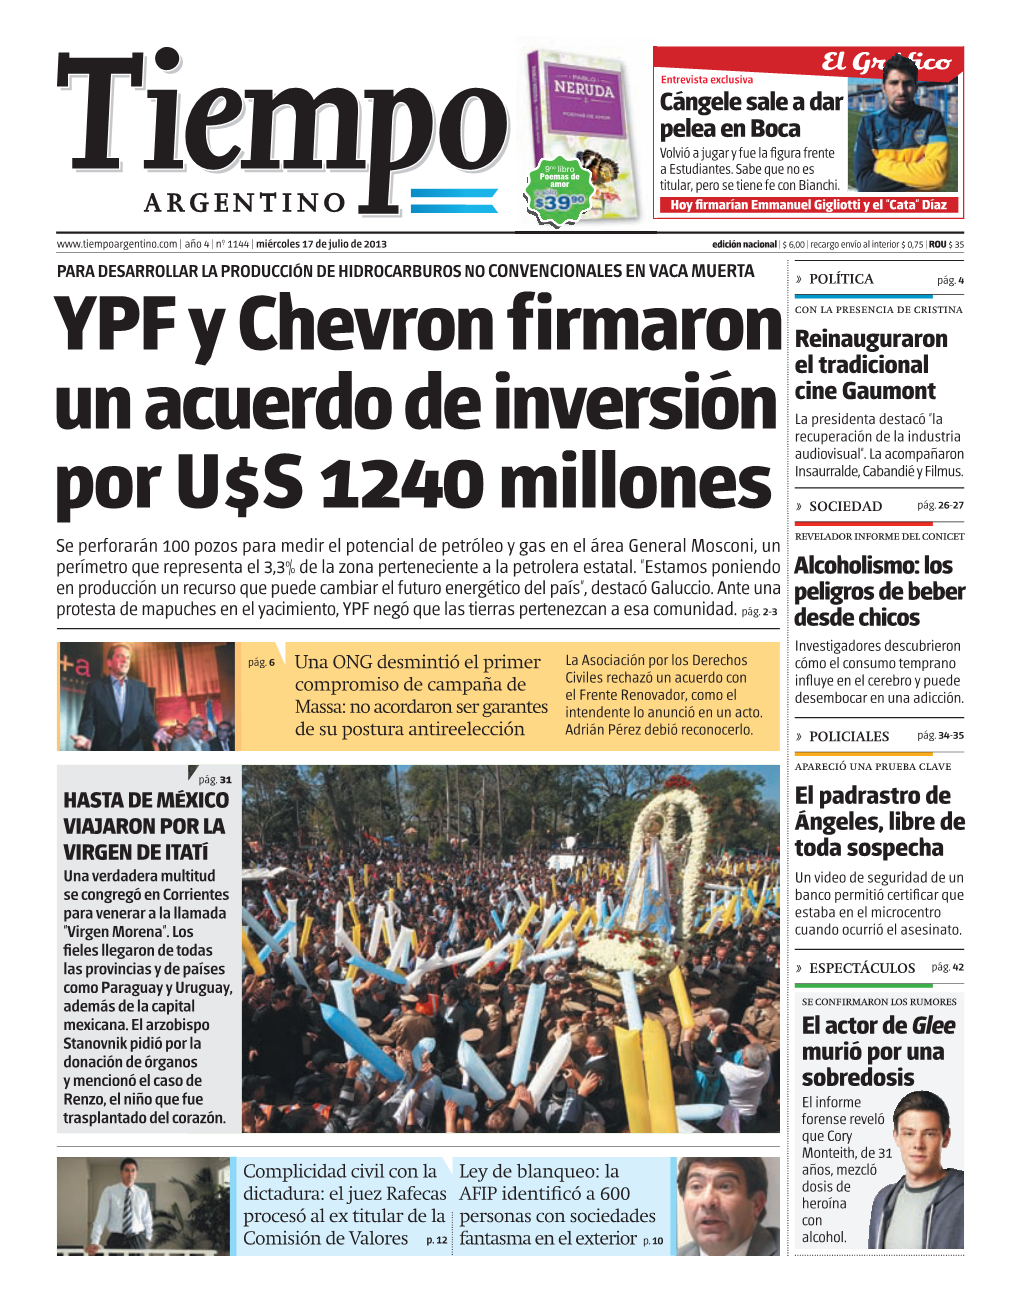 YPF Y Chevron Firmaron Un Acuerdo De Inversión Por U$S 1240 Millones